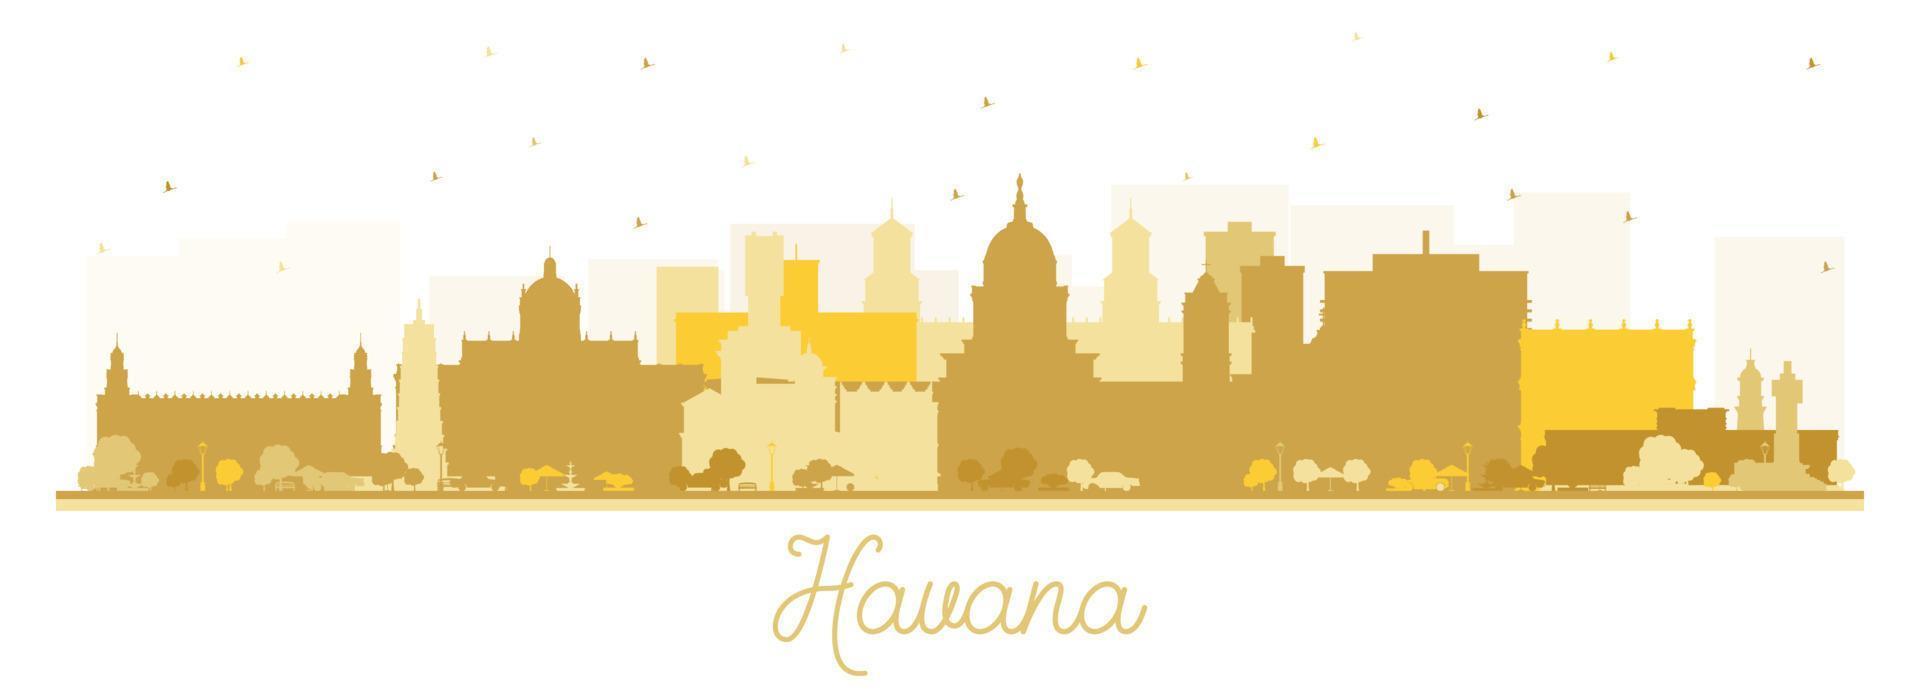 havanna kuba city skyline silhouette mit goldenen gebäuden isoliert auf weiß. vektor